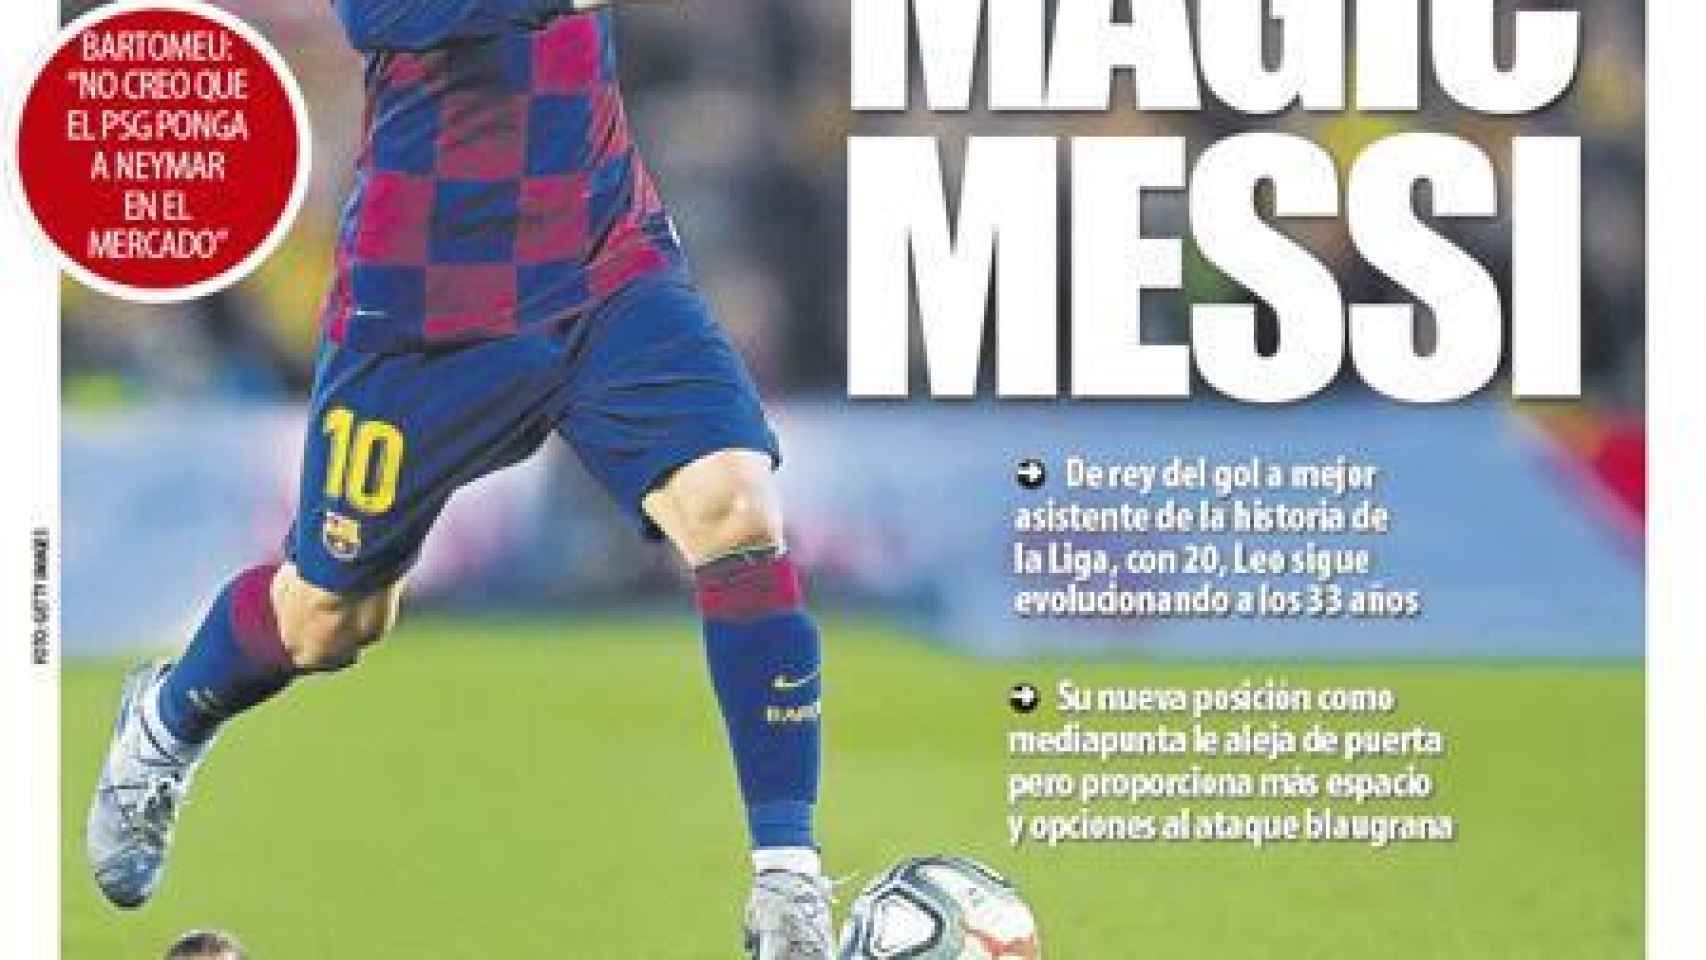 La portada del diario Mundo Deportivo (13/07/2020)